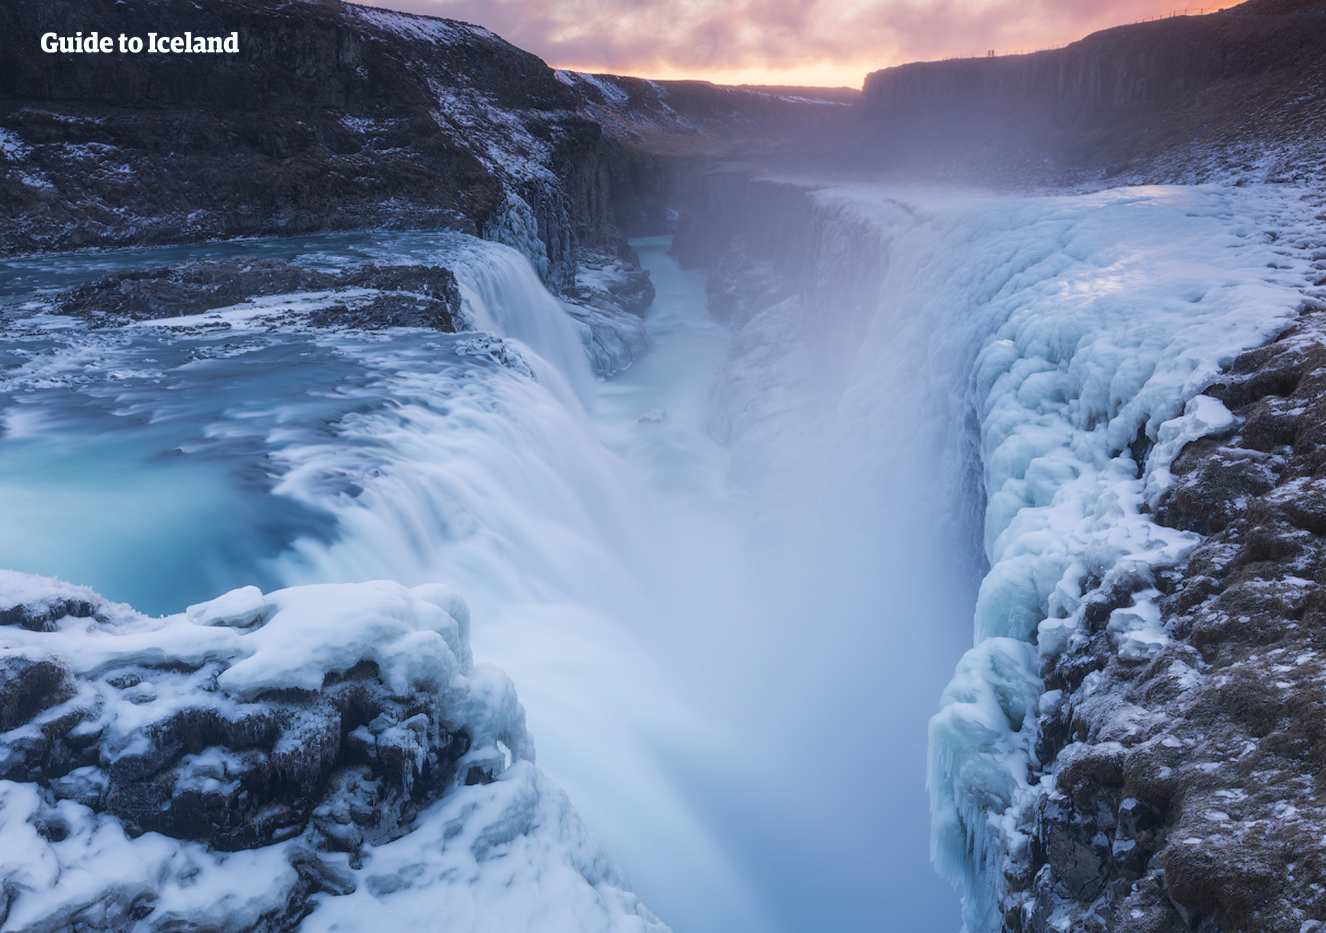 Potężny wodospad Gullfoss jest oszałamiający, a otaczające zamarznięte krajobrazy w zimie tylko dodają mu uroku